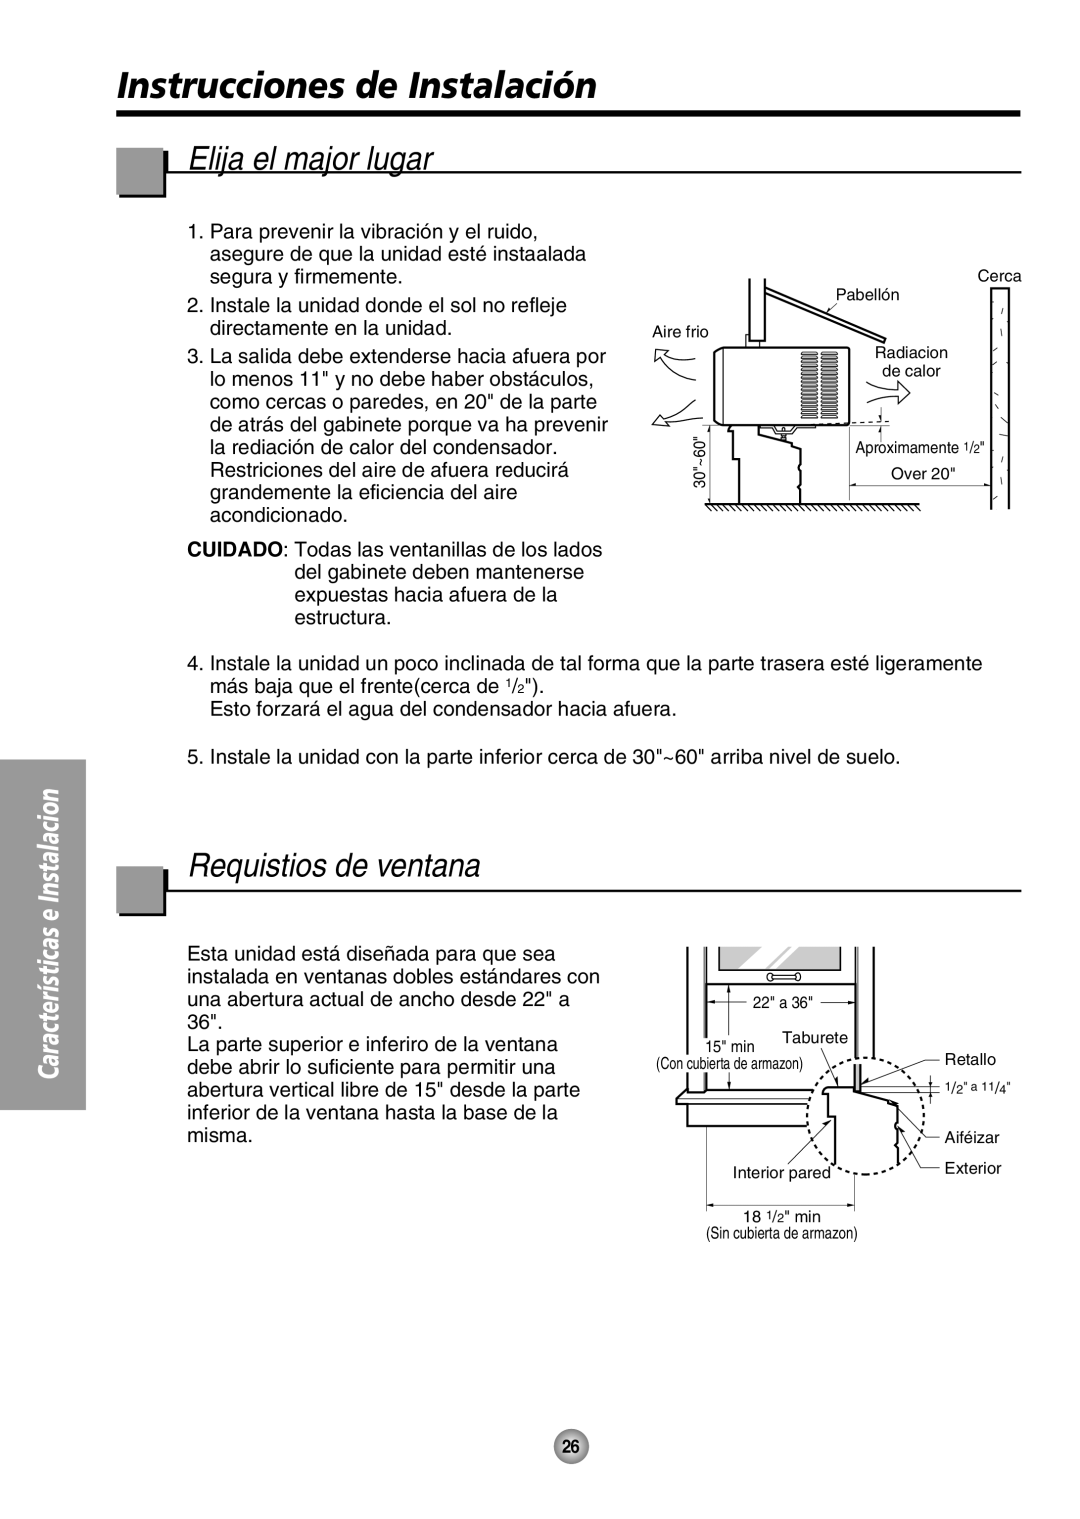 Panasonic CW-XC80HU manual Instrucciones de Instalación, Elija el major lugar, Requistios de ventana 